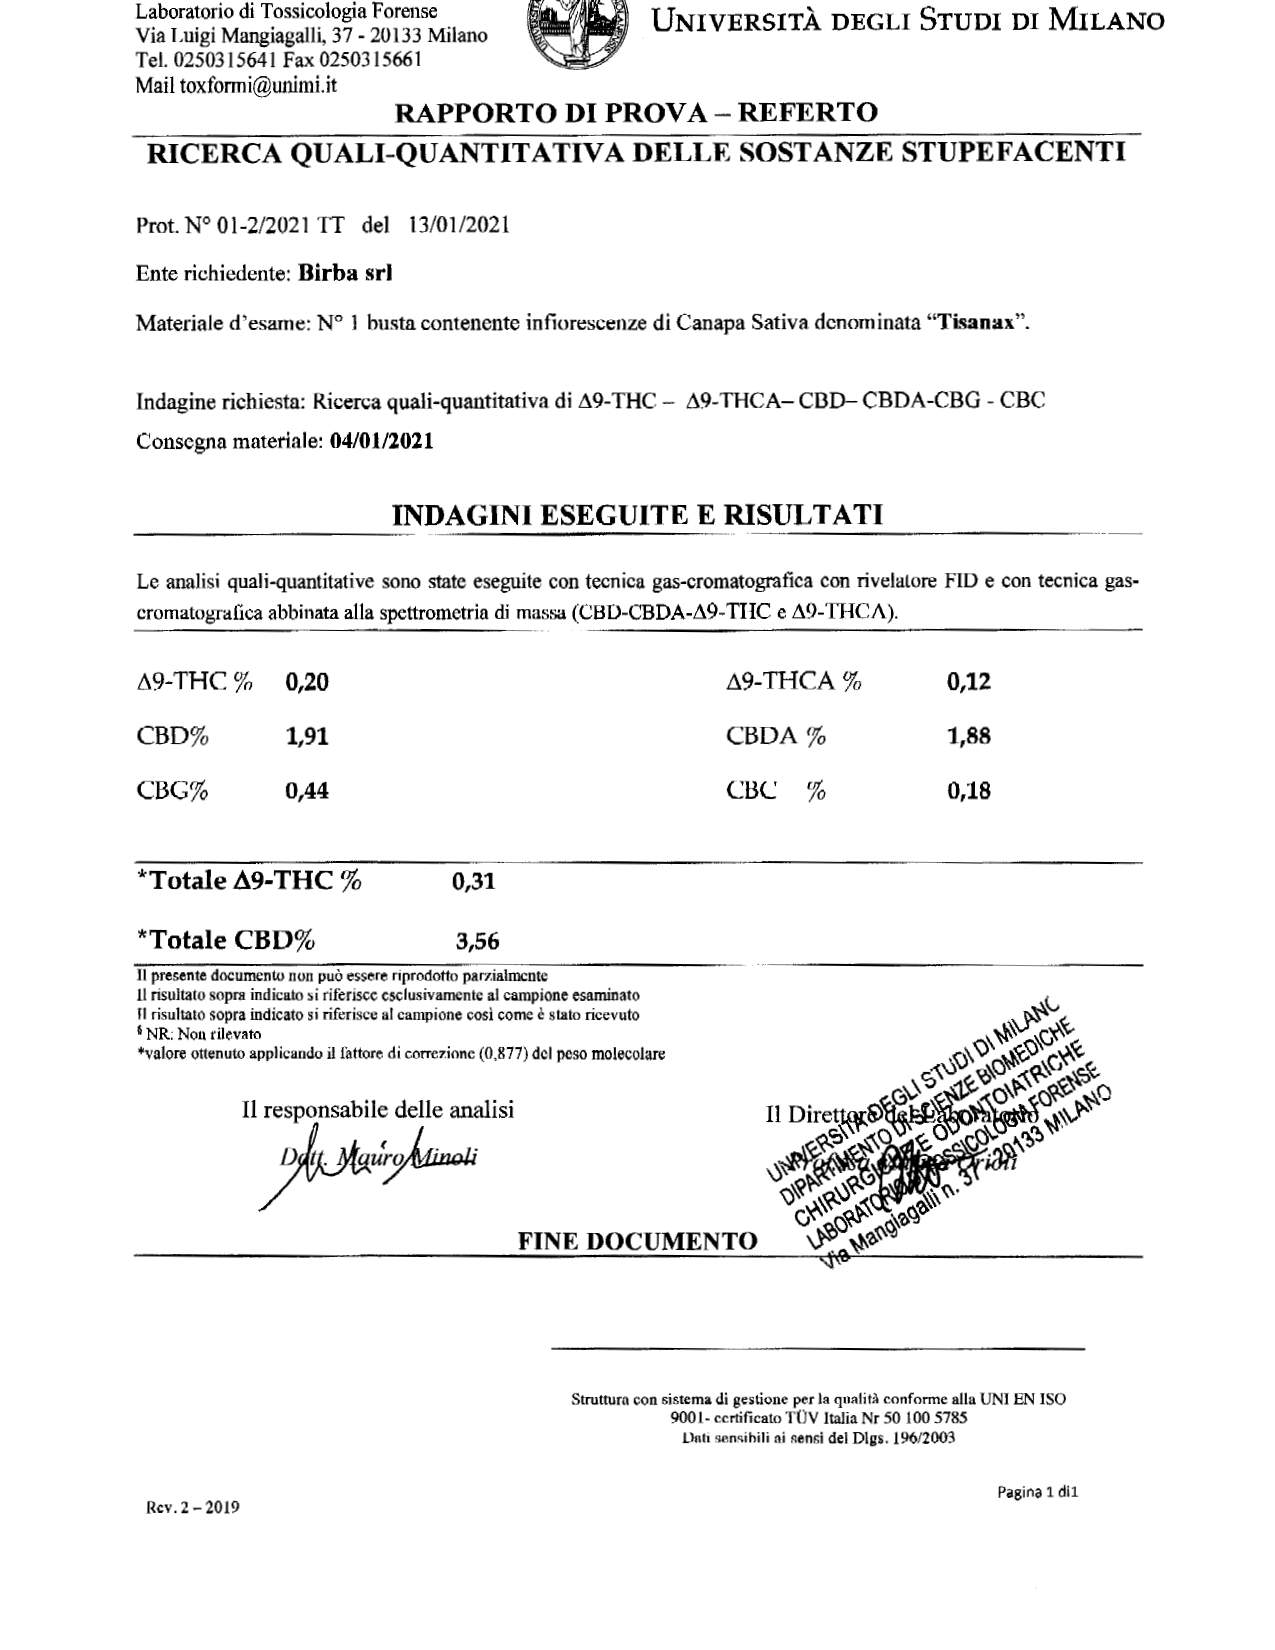 TisanAx by J-Ax - 25 gr (omaggio un infusore) (10 tisane) (solo maggiorenni) CBD 3.56% THC 0.31%